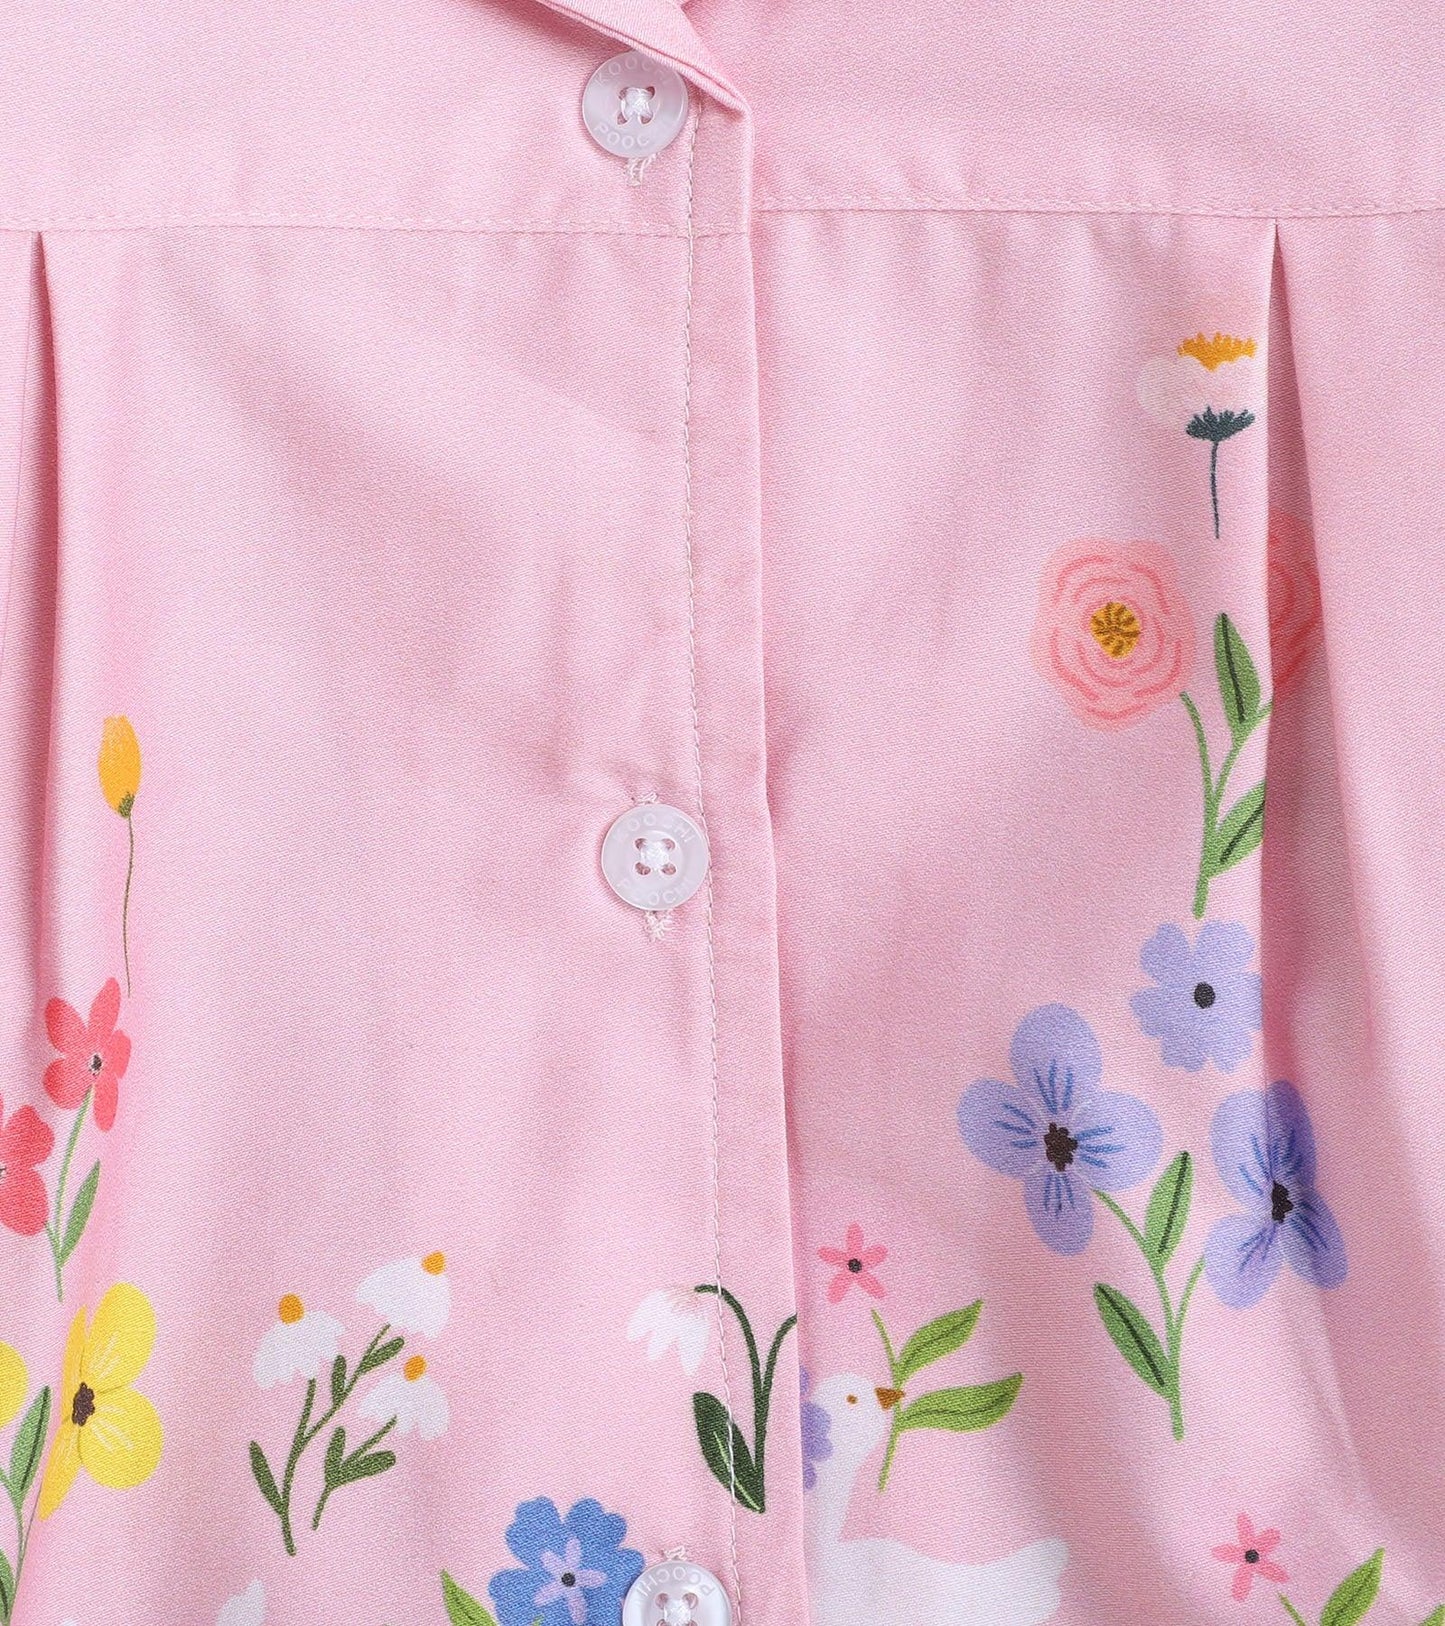 Pink Floral Printed Girls Nightsuit Set - koochi Poochi